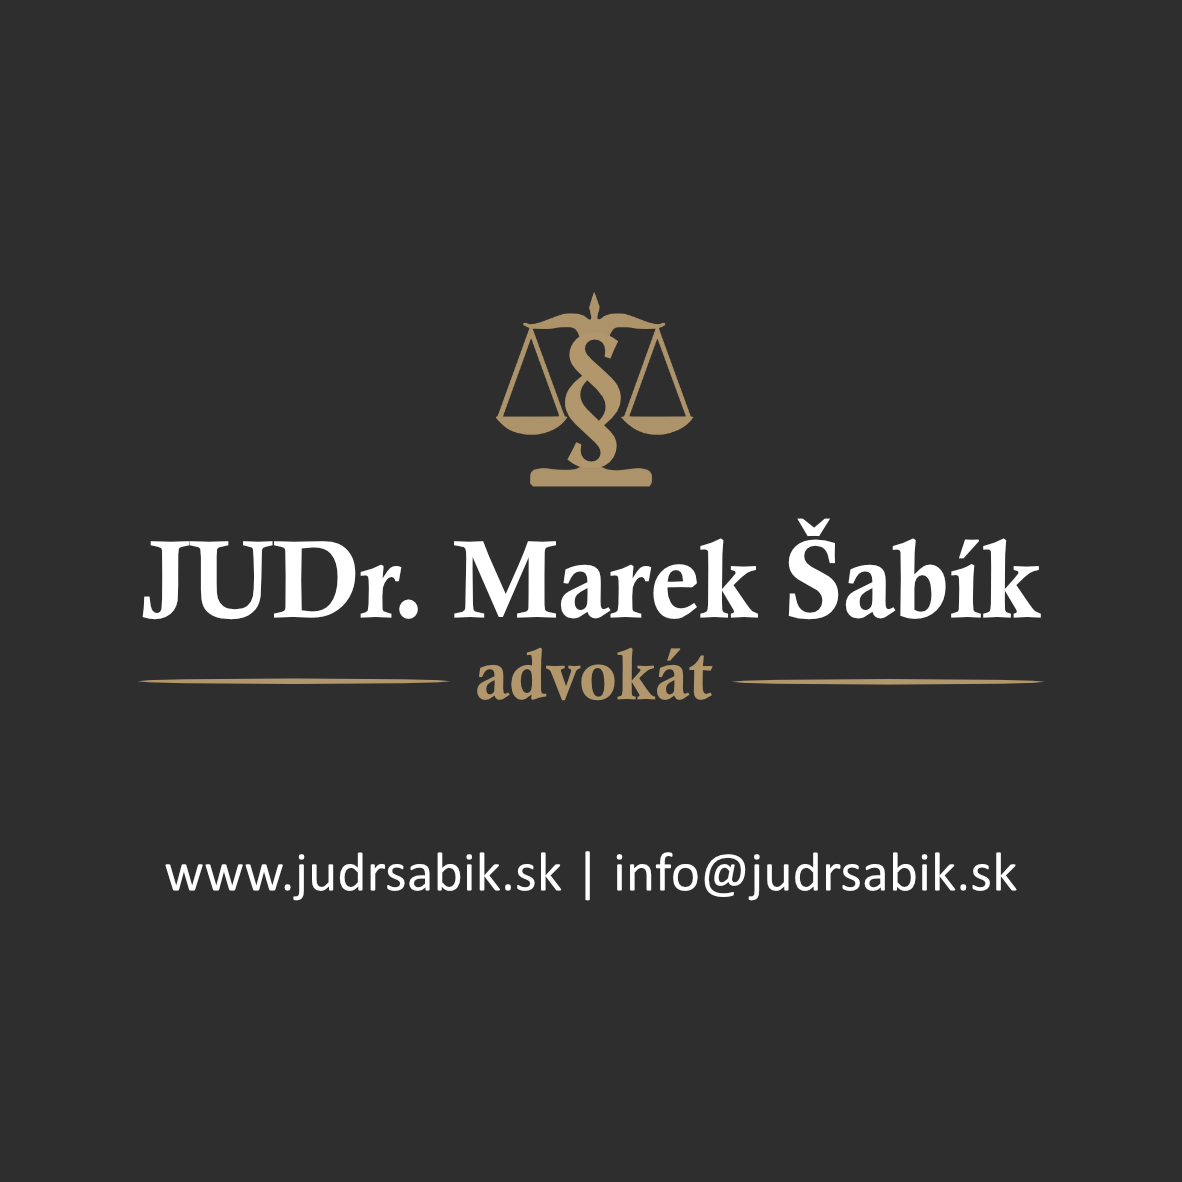 advokát, právne služby, zakladanie spoločností, vymáhanie pohľadávok, spisovanie zmlúv, obhajoba v trestnom konaní, návrhy na súd - JUDr. Marek Šabík, advokát